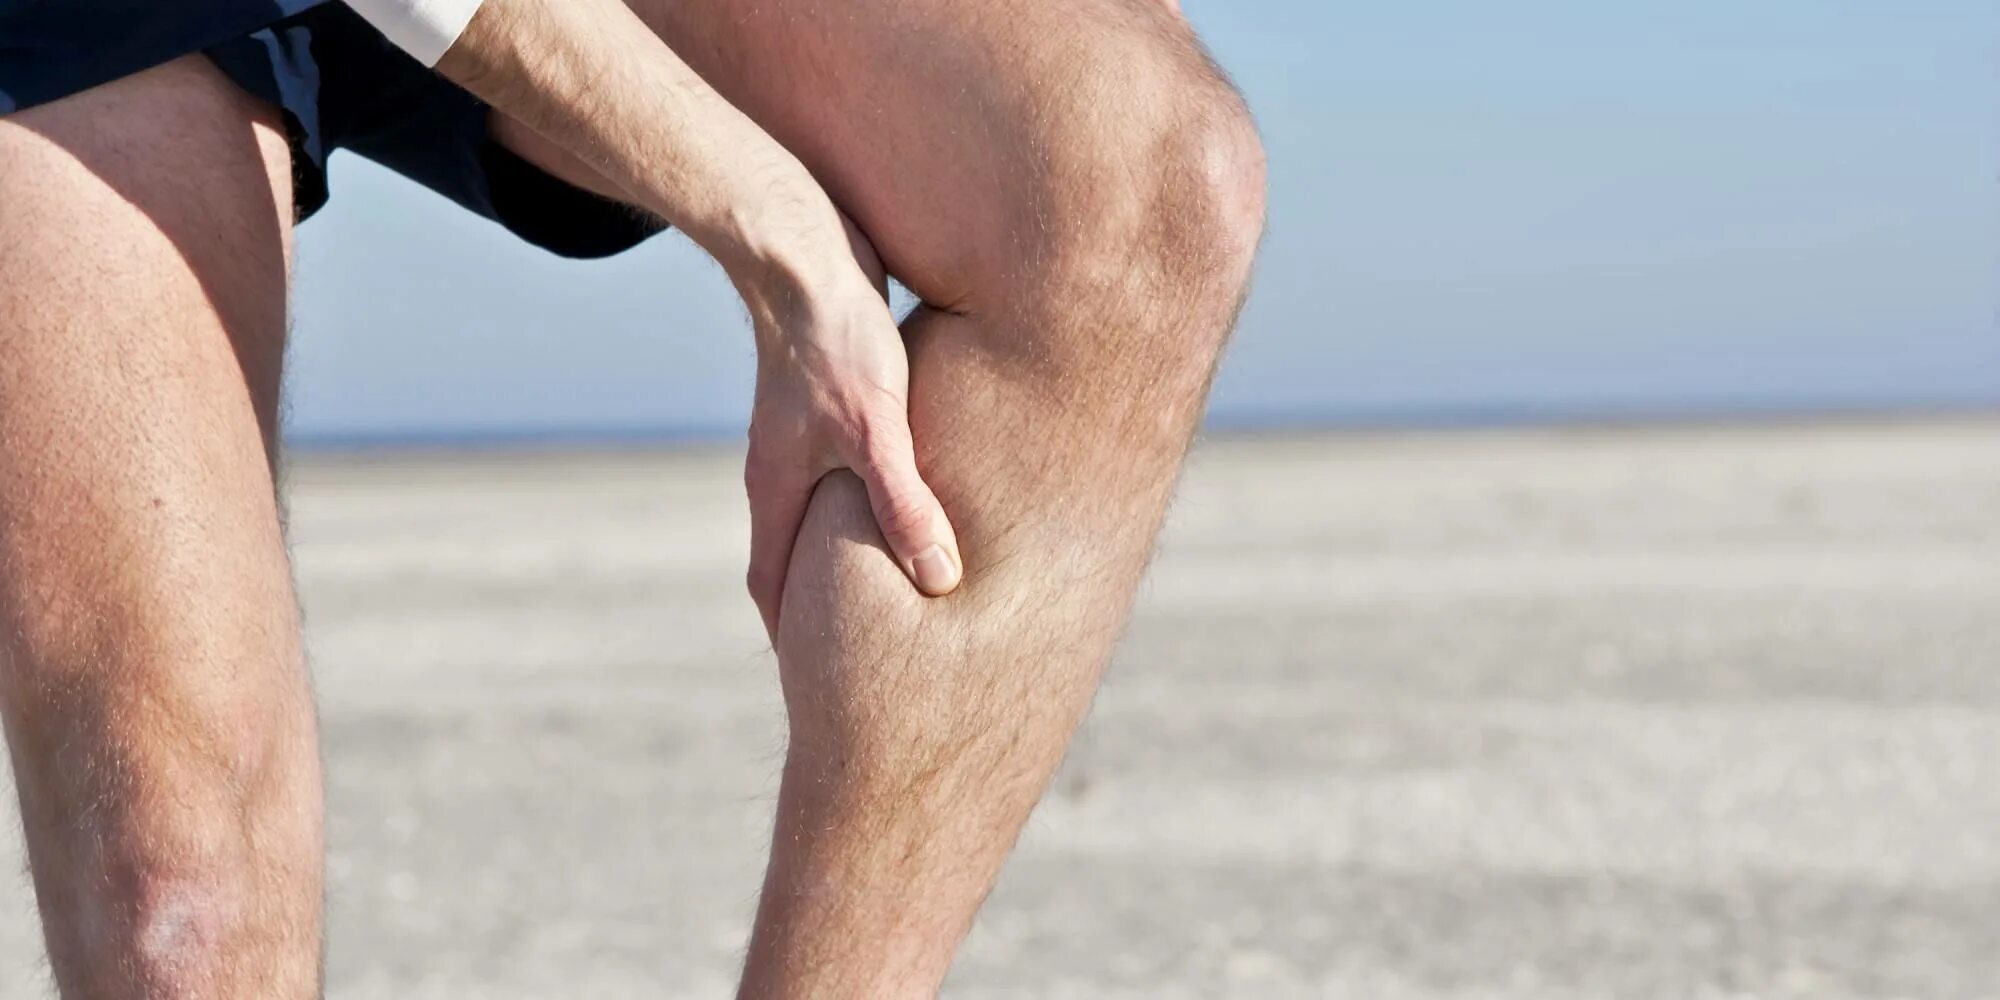 Тянущие боли в ногах причины лечение. Варикозное расширение вен на икрах.